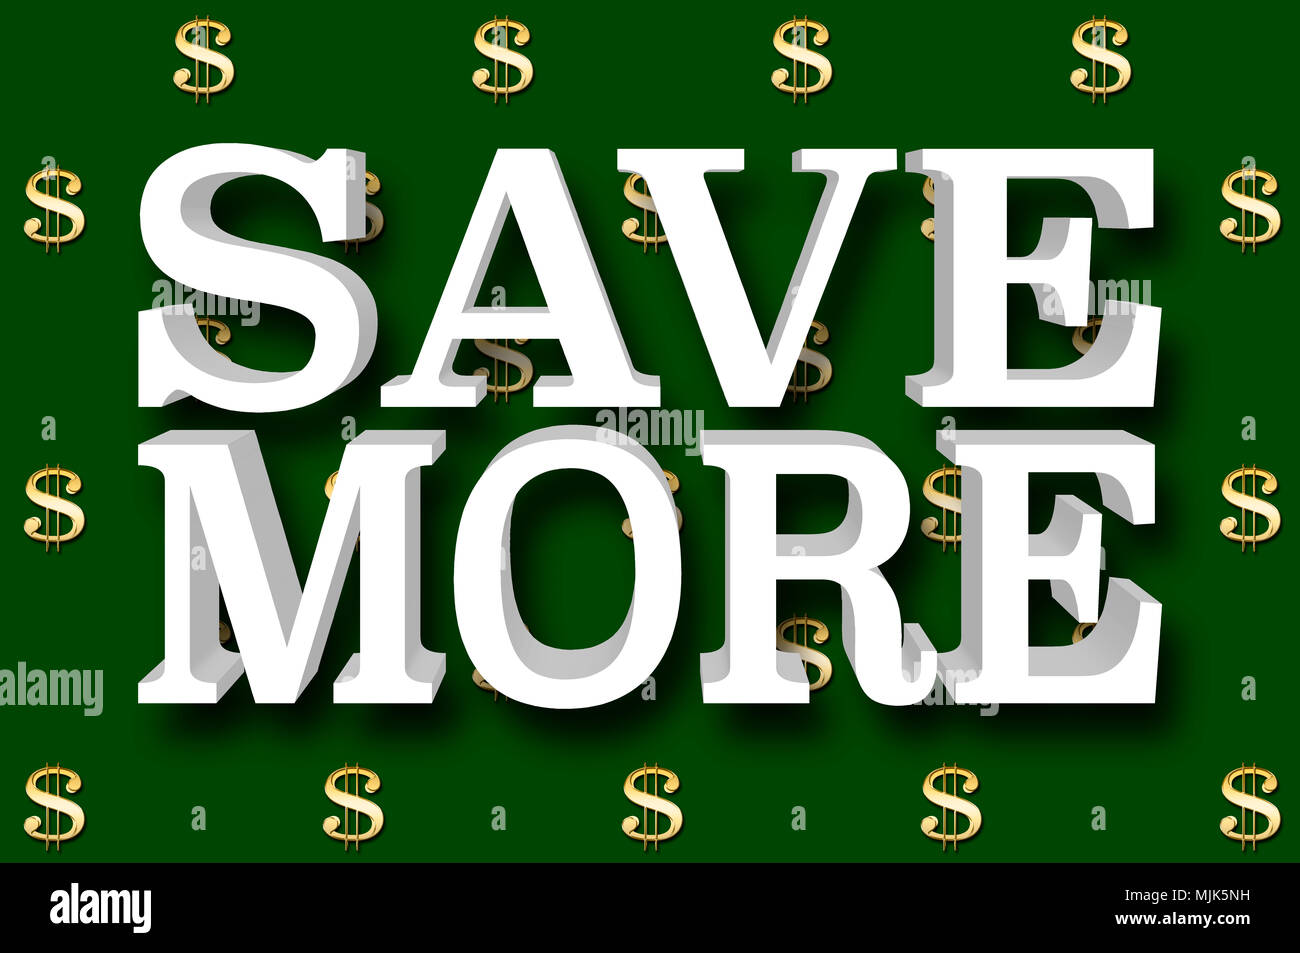 Stock Illustration - Große metallische Text: Sparen Sie mehr, 3D-Illustration, kleine Golden Dollar Währung Zeichen in das Geld grünen Hintergrund. Stockfoto